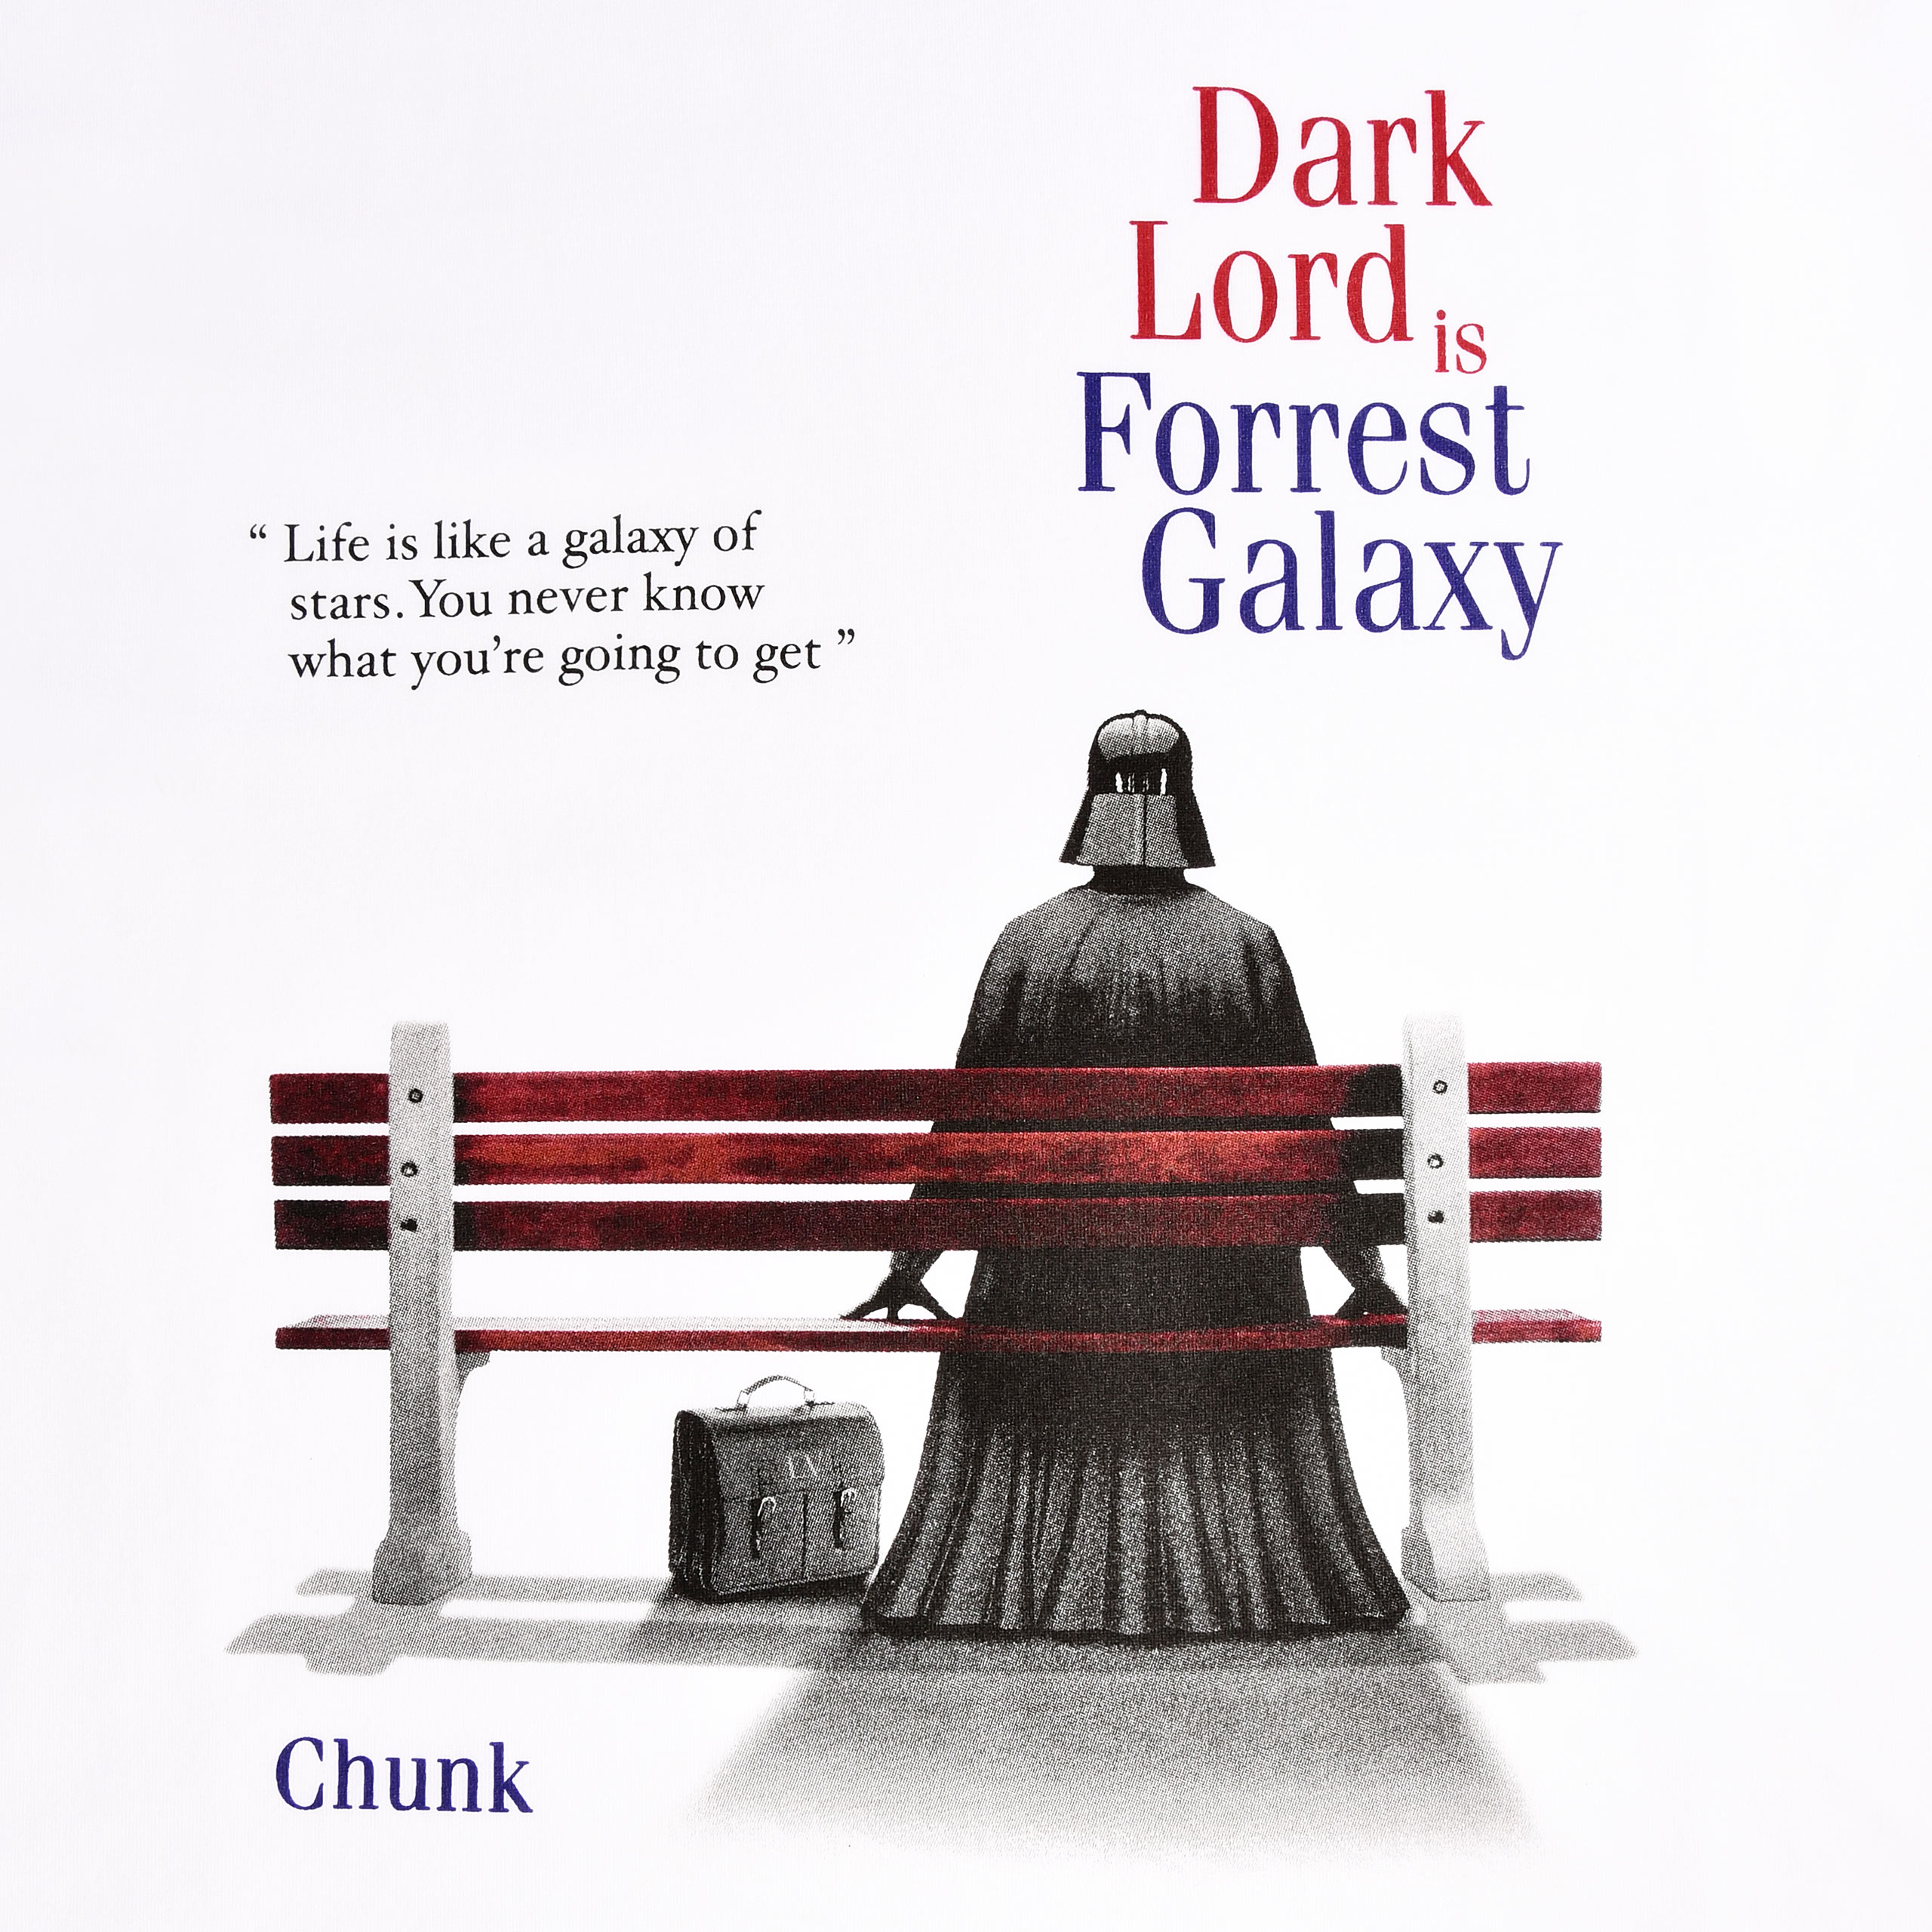 Dark Lord is Forrest Galaxy T-Shirt für Star Wars Fans weiß